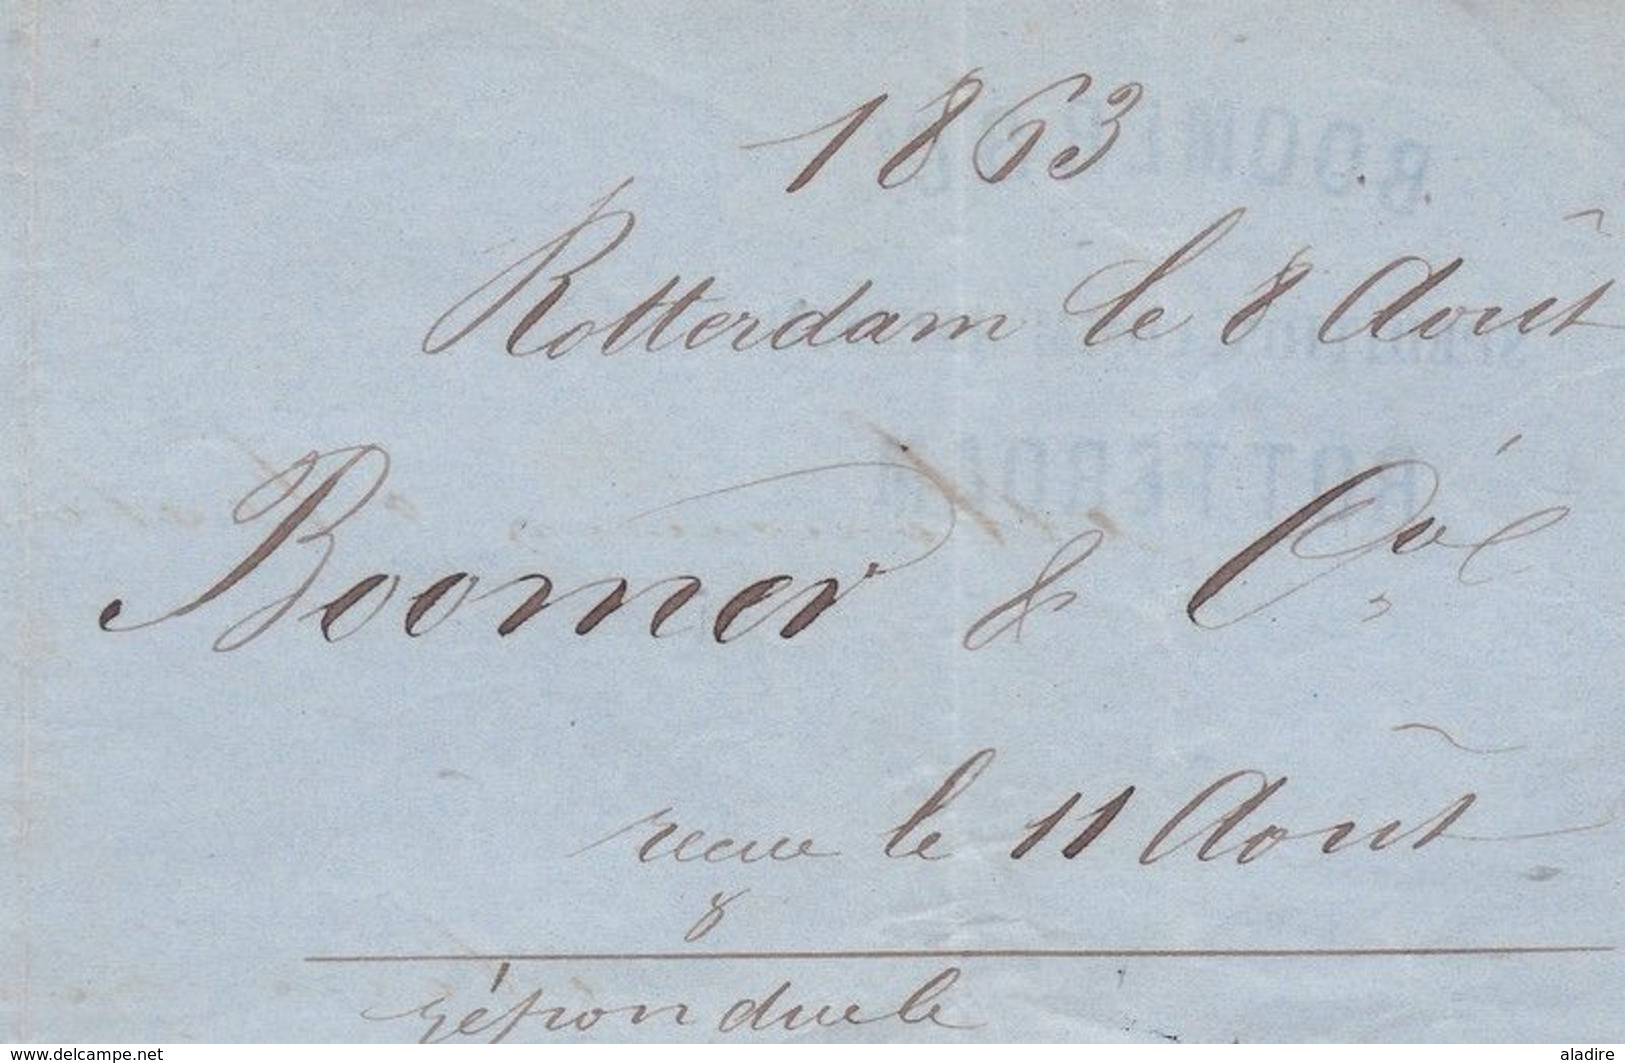 1863    - Lettre pliée en français de Rotterdam vers Le Havre, France via Erquelines & Paris